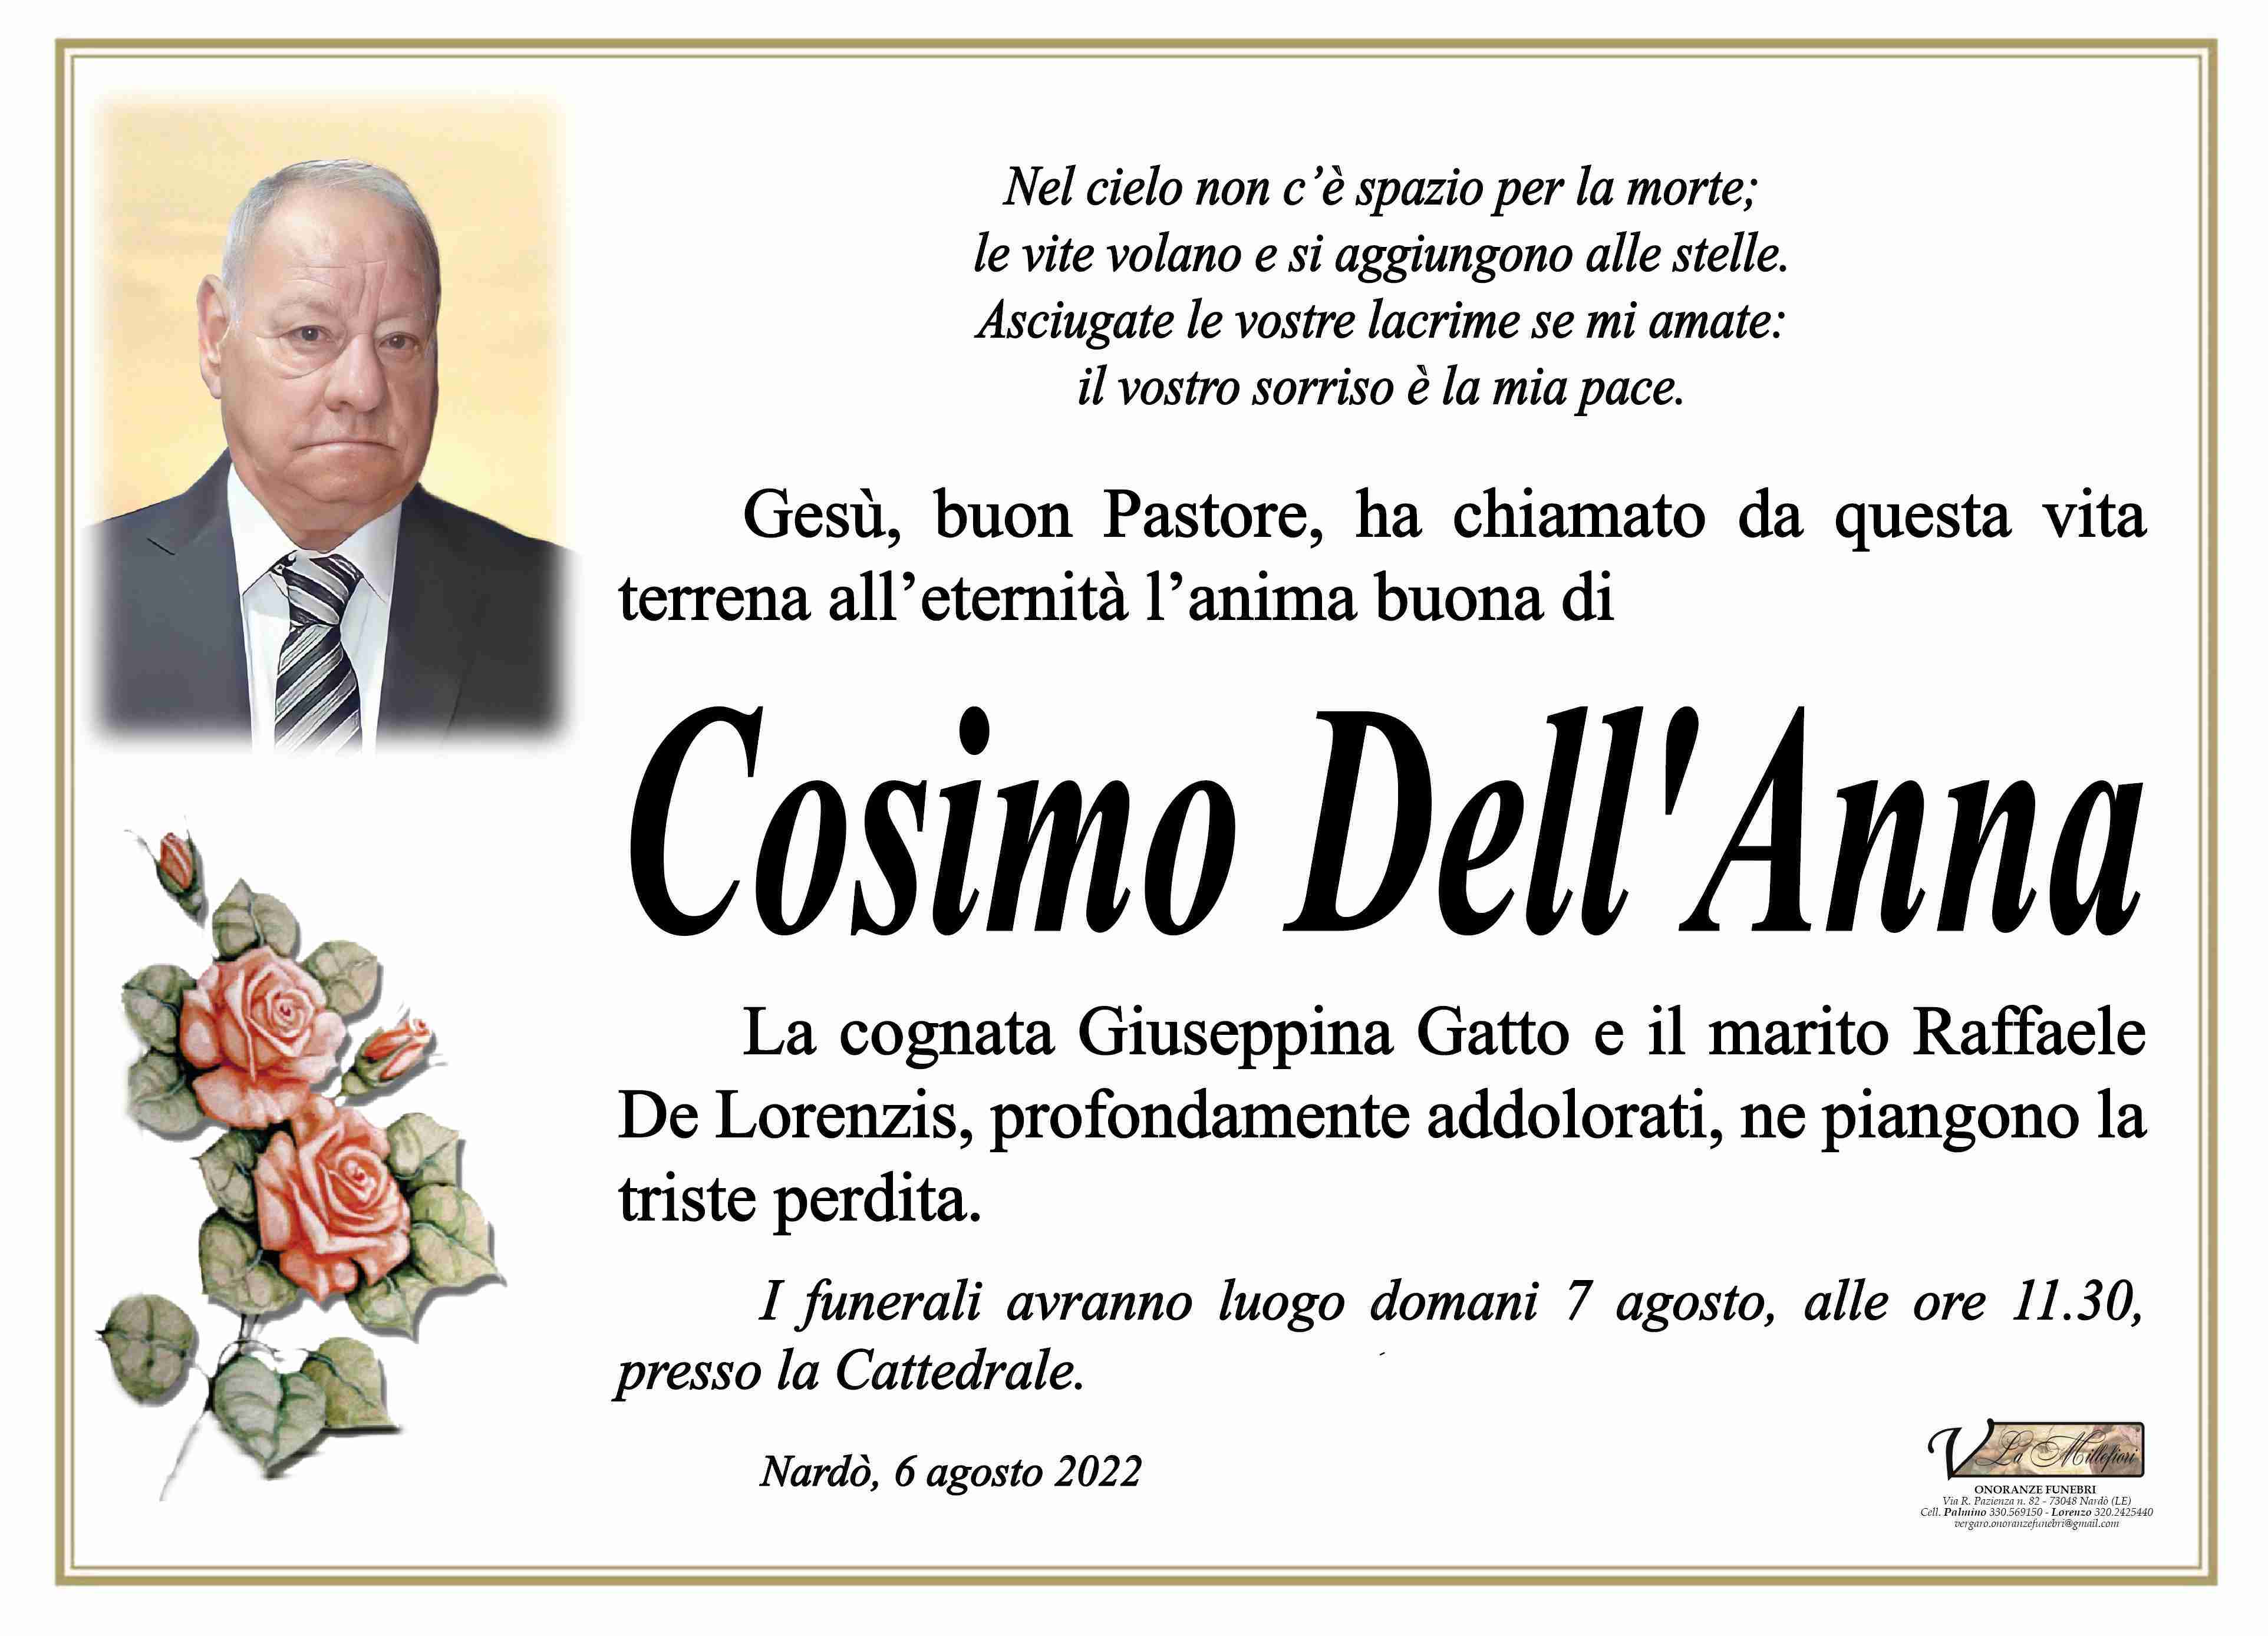 Cosimo Dell'Anna